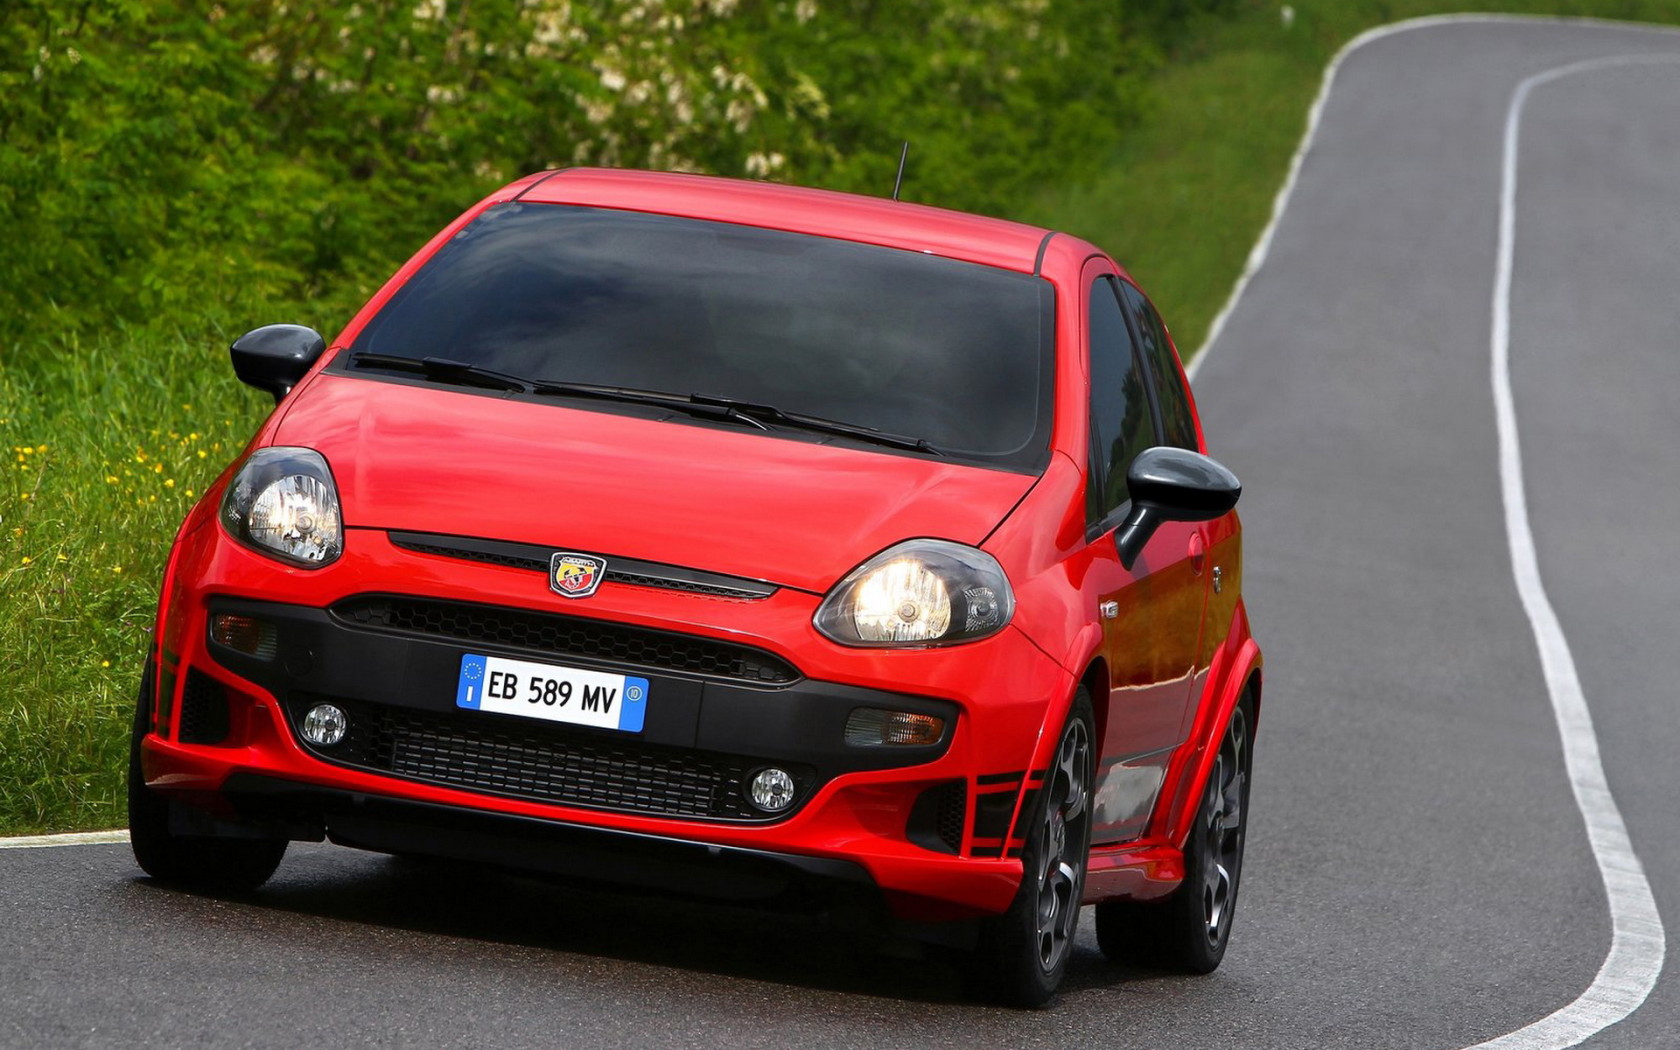 Fiat-Punto Evo Abarth 2011